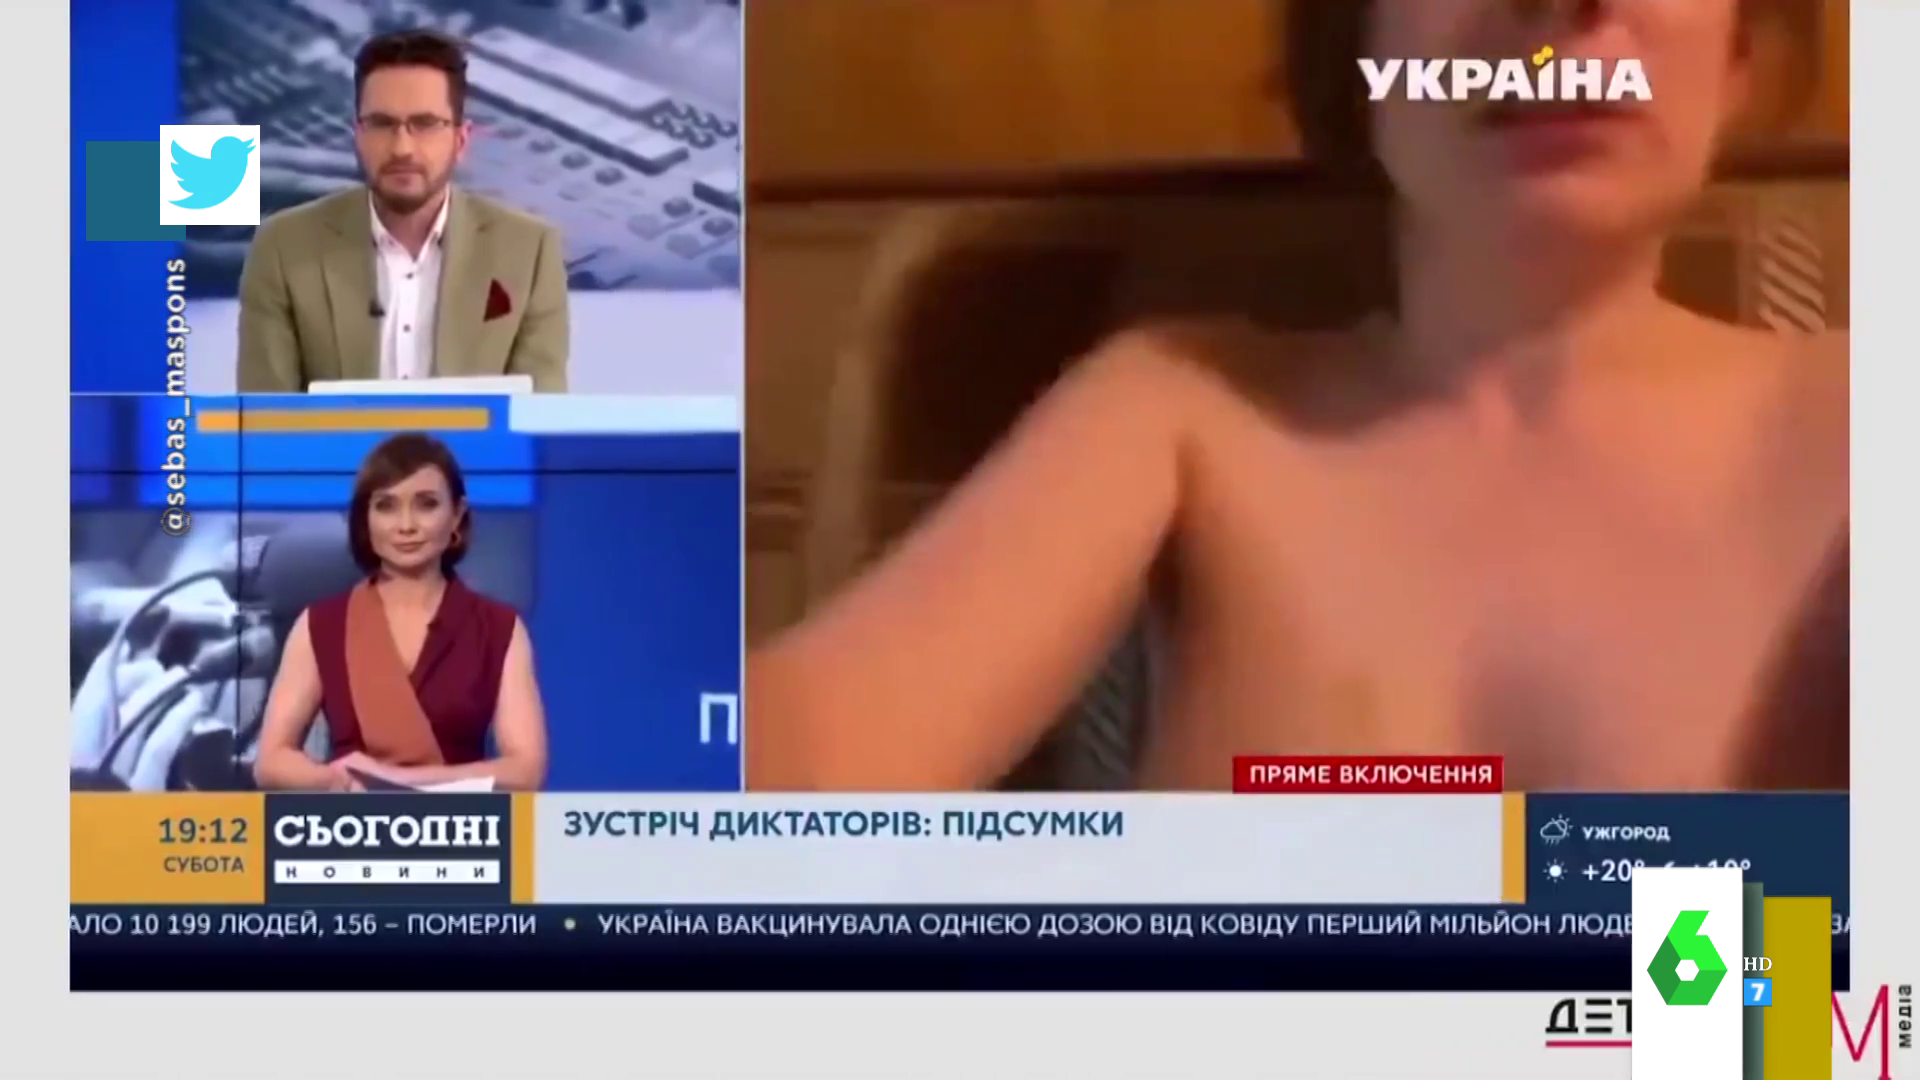 El inesperado momento en el que sale una mujer desnuda en una videollamada de televisión así son las reacciones en directo